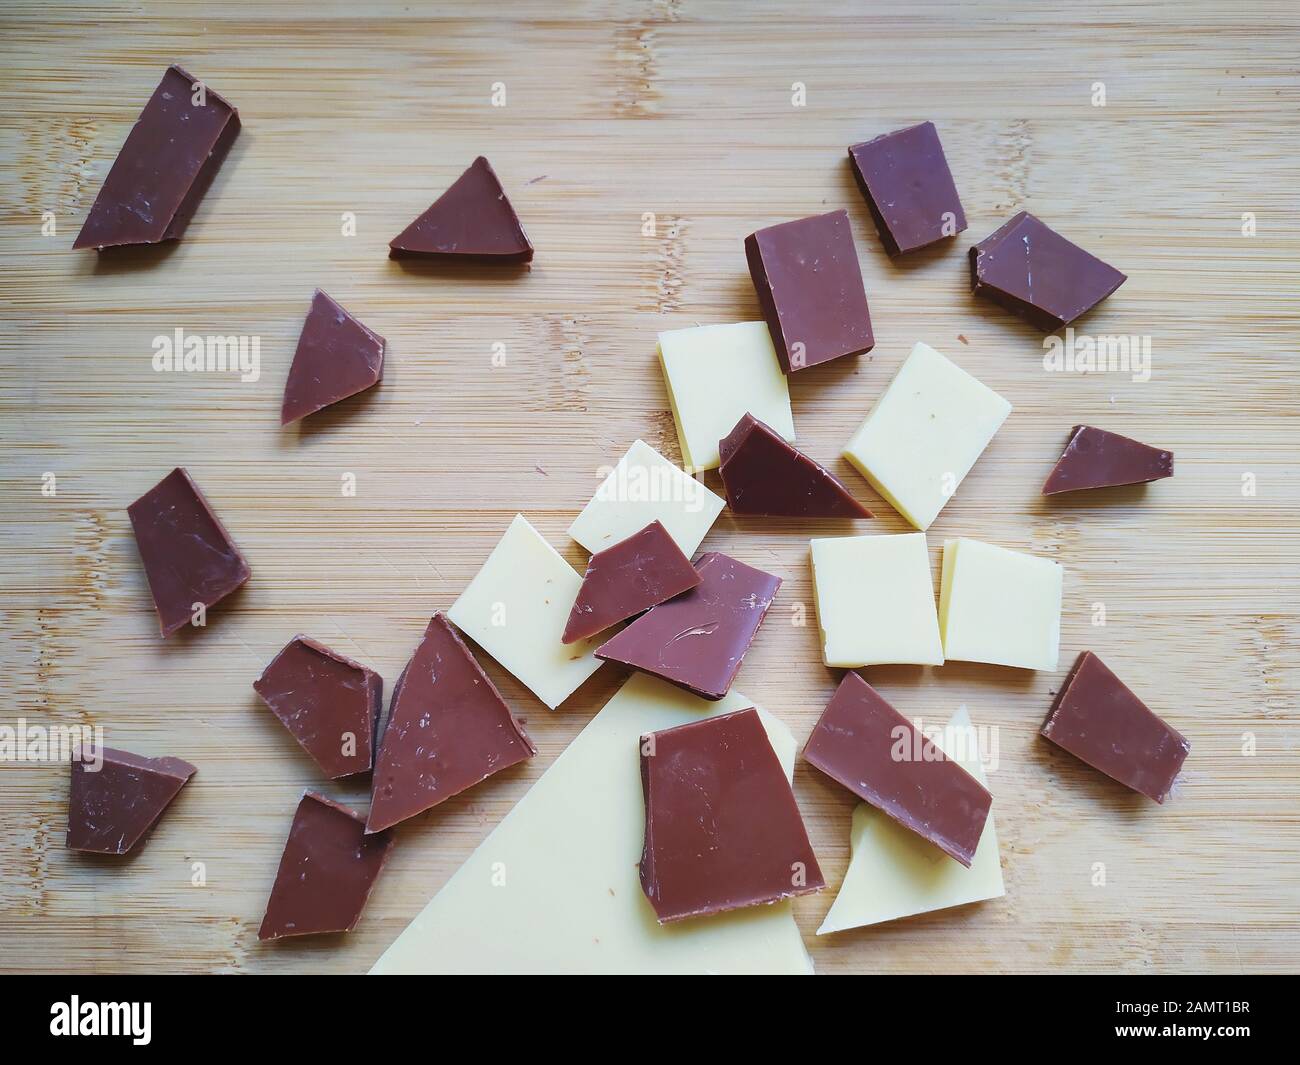 Chocolat blanc, chocolat au lait et éclats de chocolat noir sur une table en bois Banque D'Images